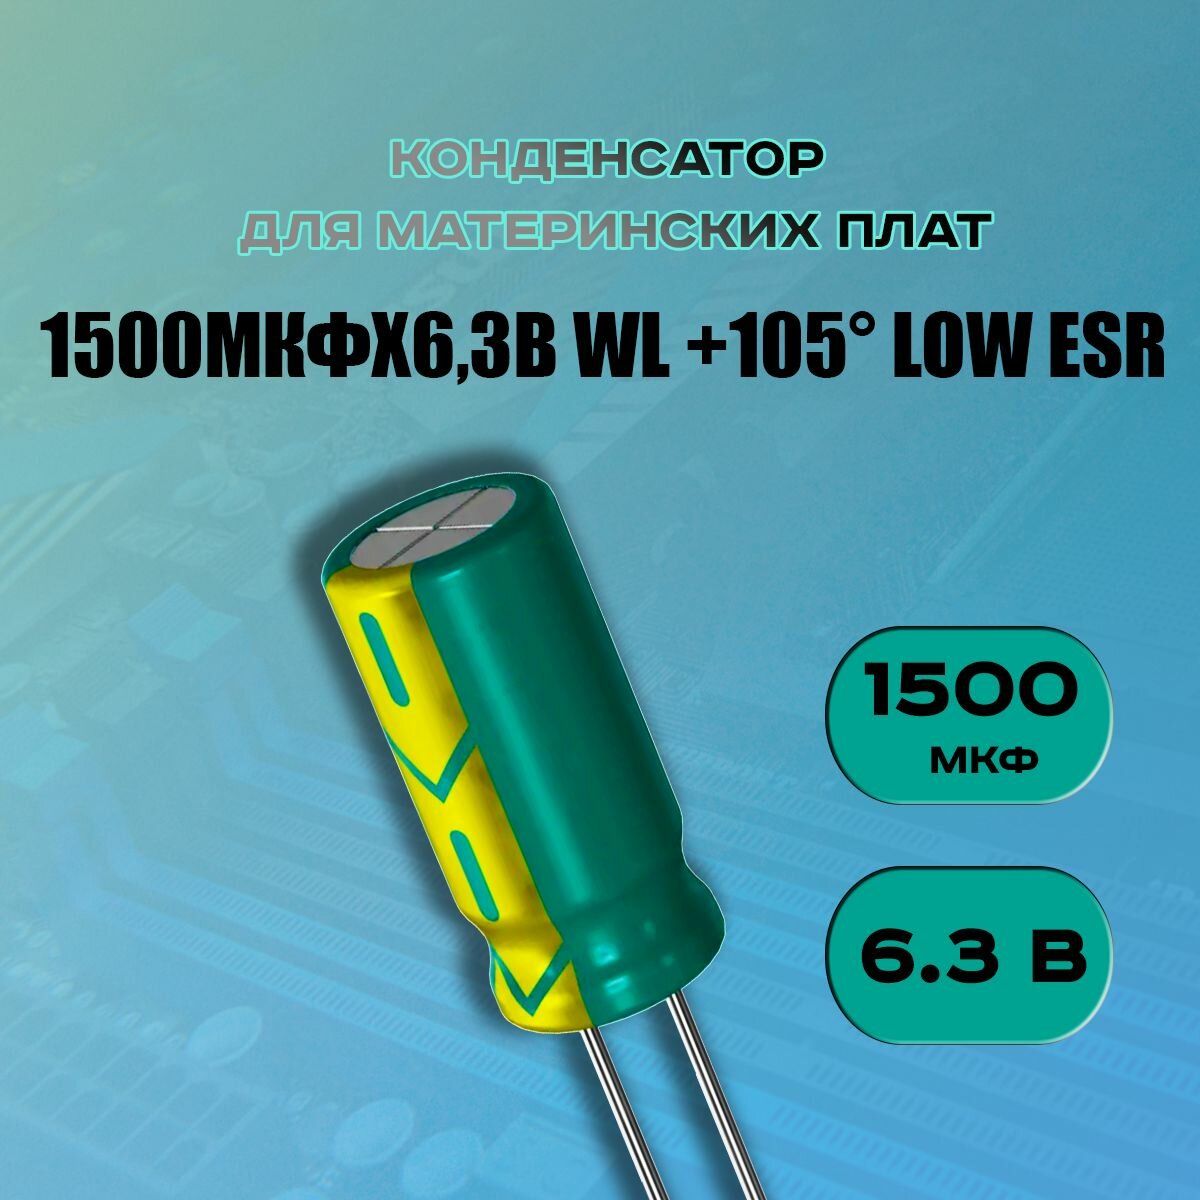 Конденсатор для материнской платы 1500 микрофарат 6.3 Вольт (1500uf 6.3V WL +105 LOW ESR) - 1 шт.